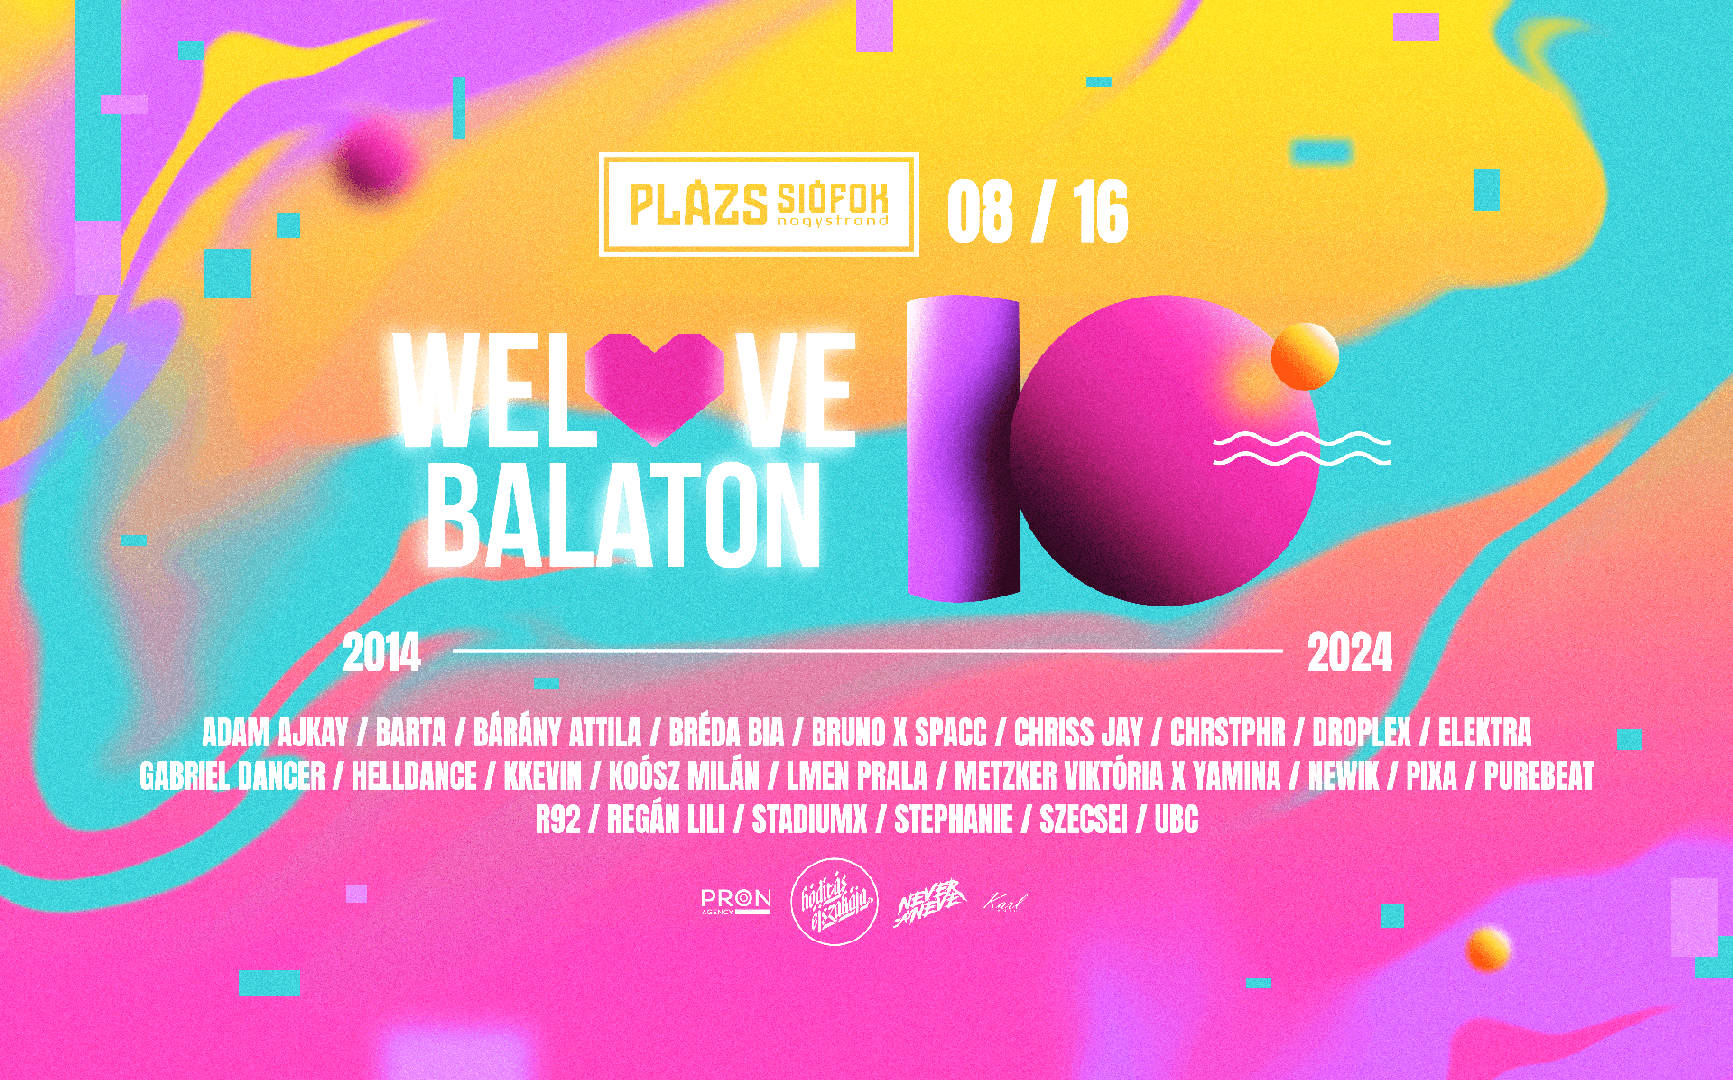 10. Welove Balaton Festival - Jubileum - Plázs Siófok 08.16.